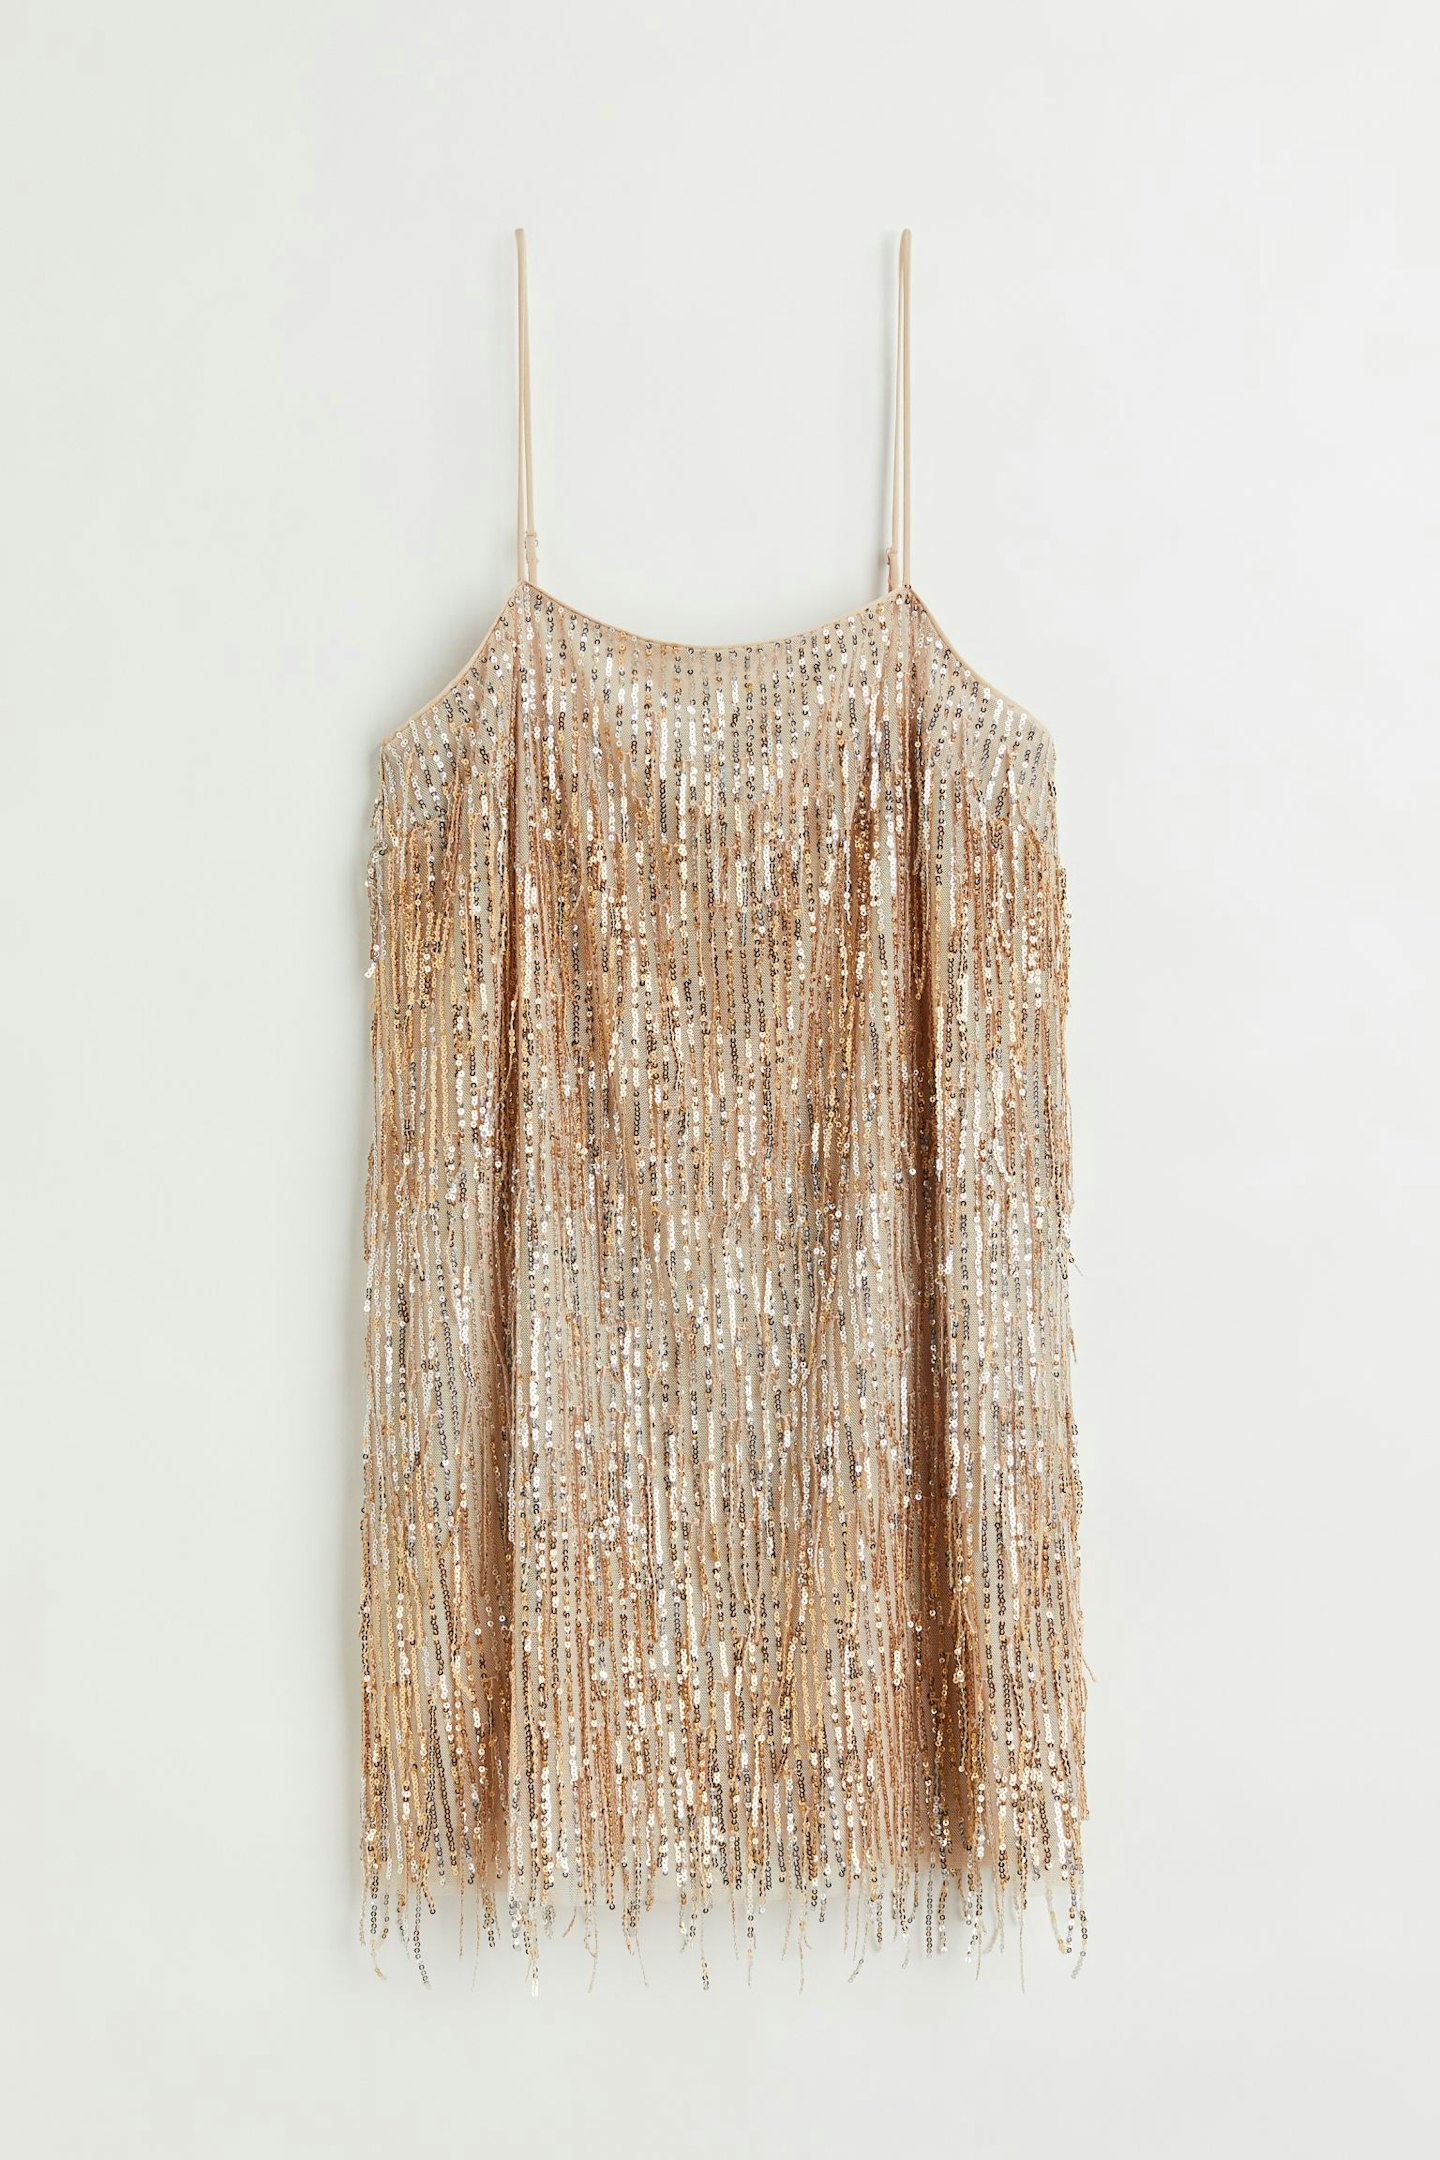 H&M, Fringe-Hem Sequinned Dress, £39.99